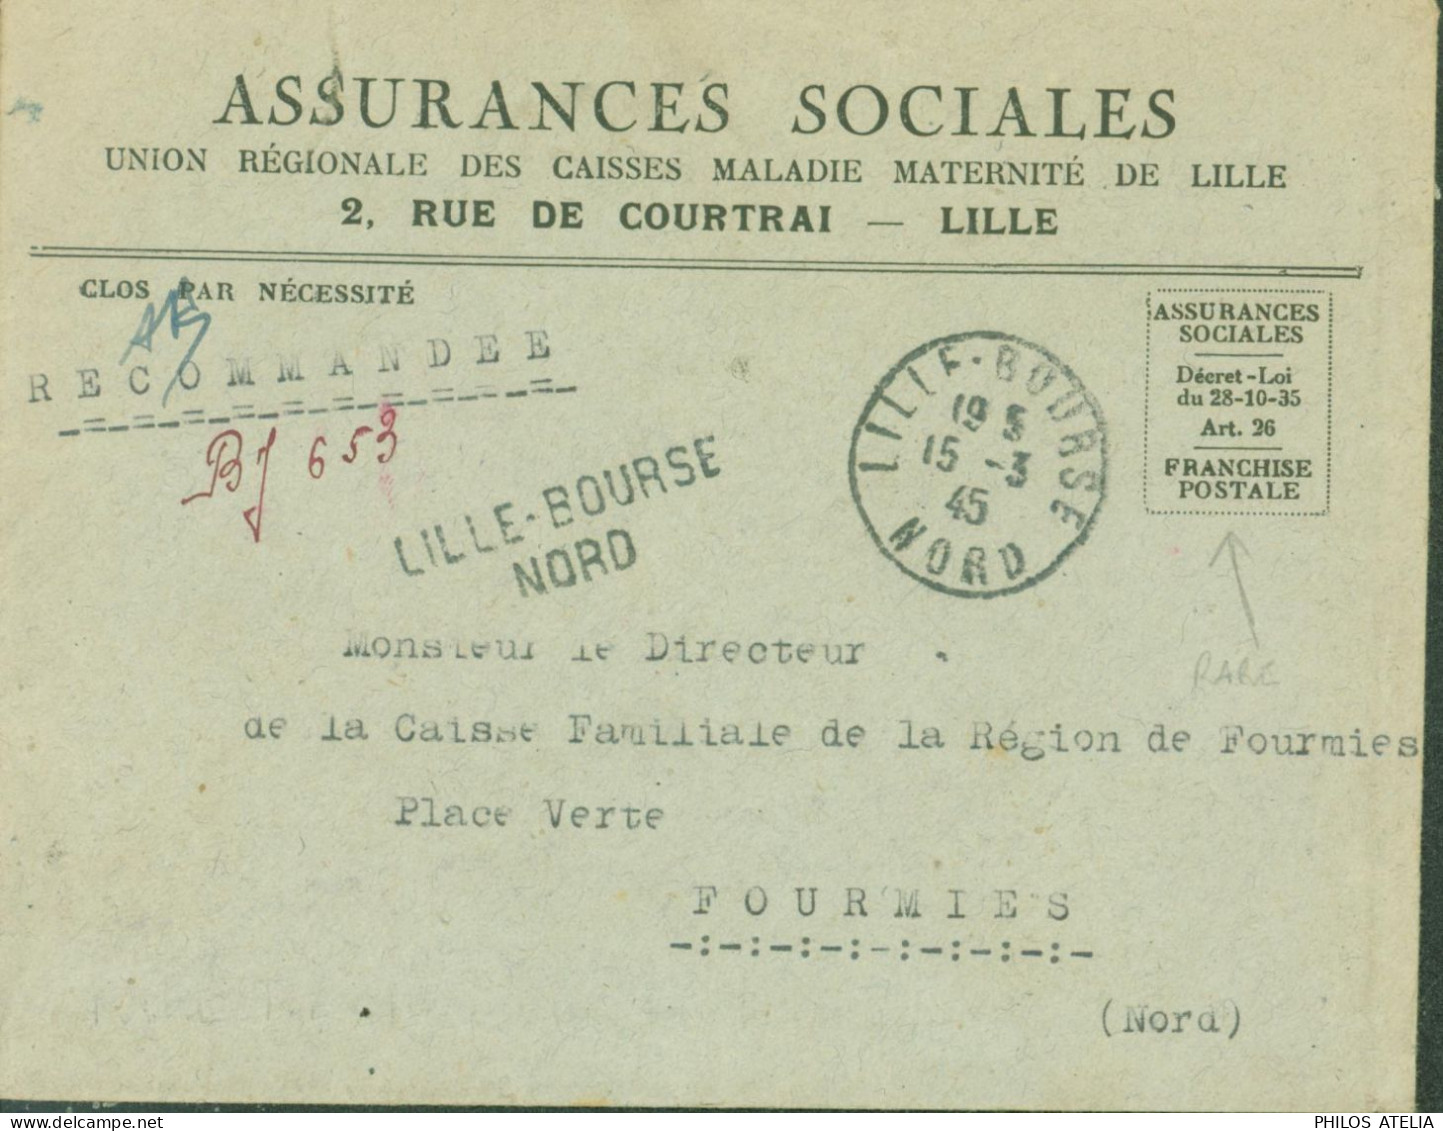 Guerre 40 Recommandé De Fortune BJ 653 Lille Bourse Nord Avec Franchise Postale Assurances Sociales CAD 15 3 45 - WW II